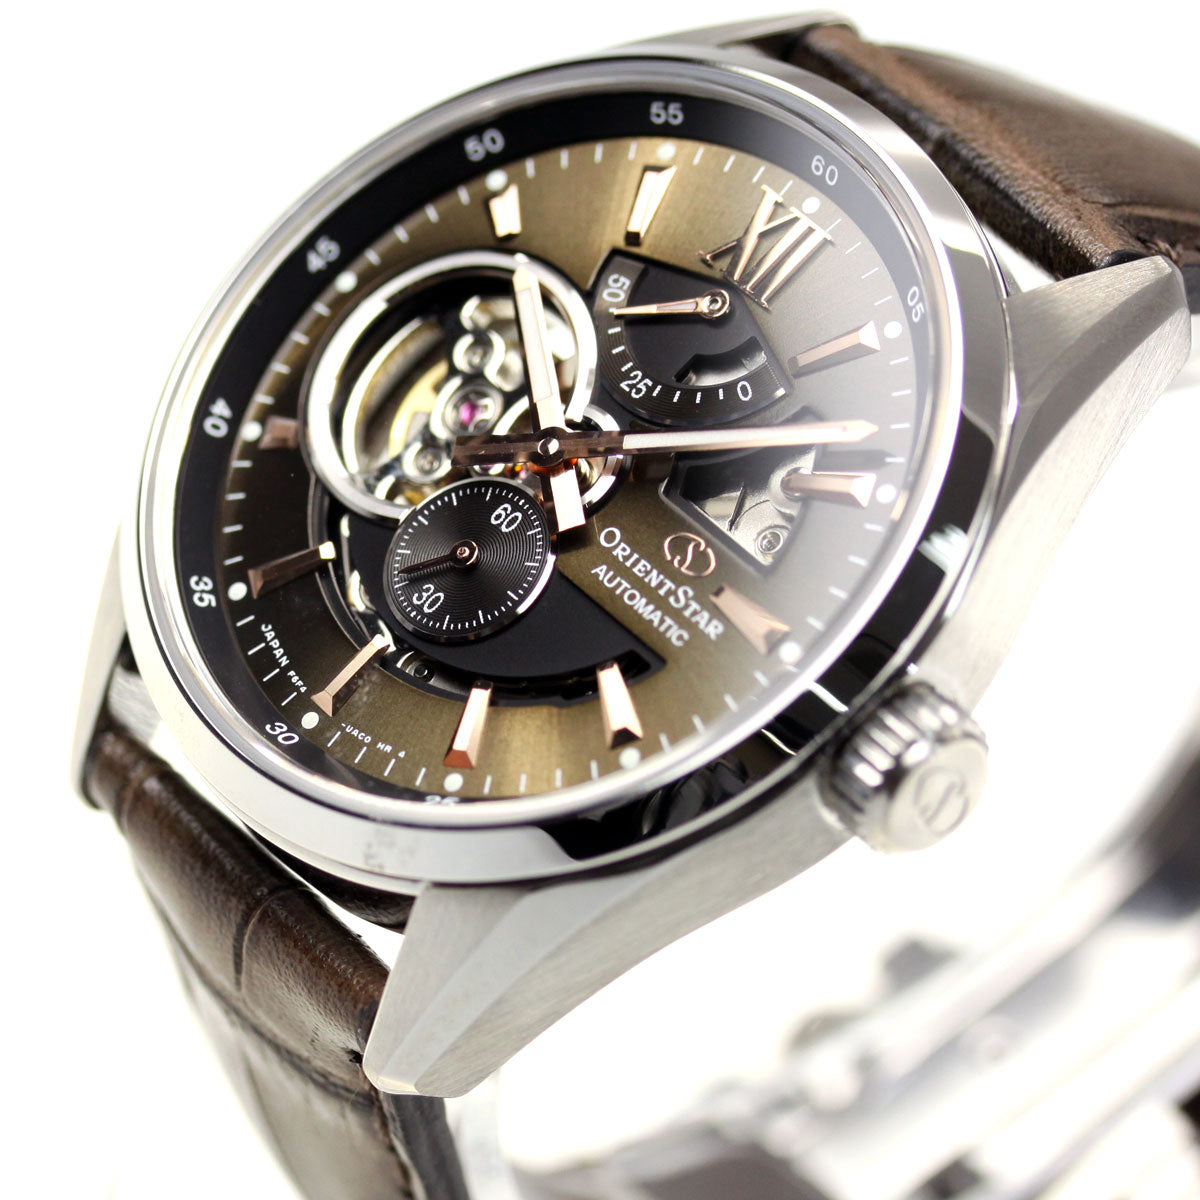 オリエントスター ORIENT STAR 腕時計 メンズ 自動巻き 機械式 コンテンポラリー CONTEMPORALY モダンスケルトン RK-AV0008Y